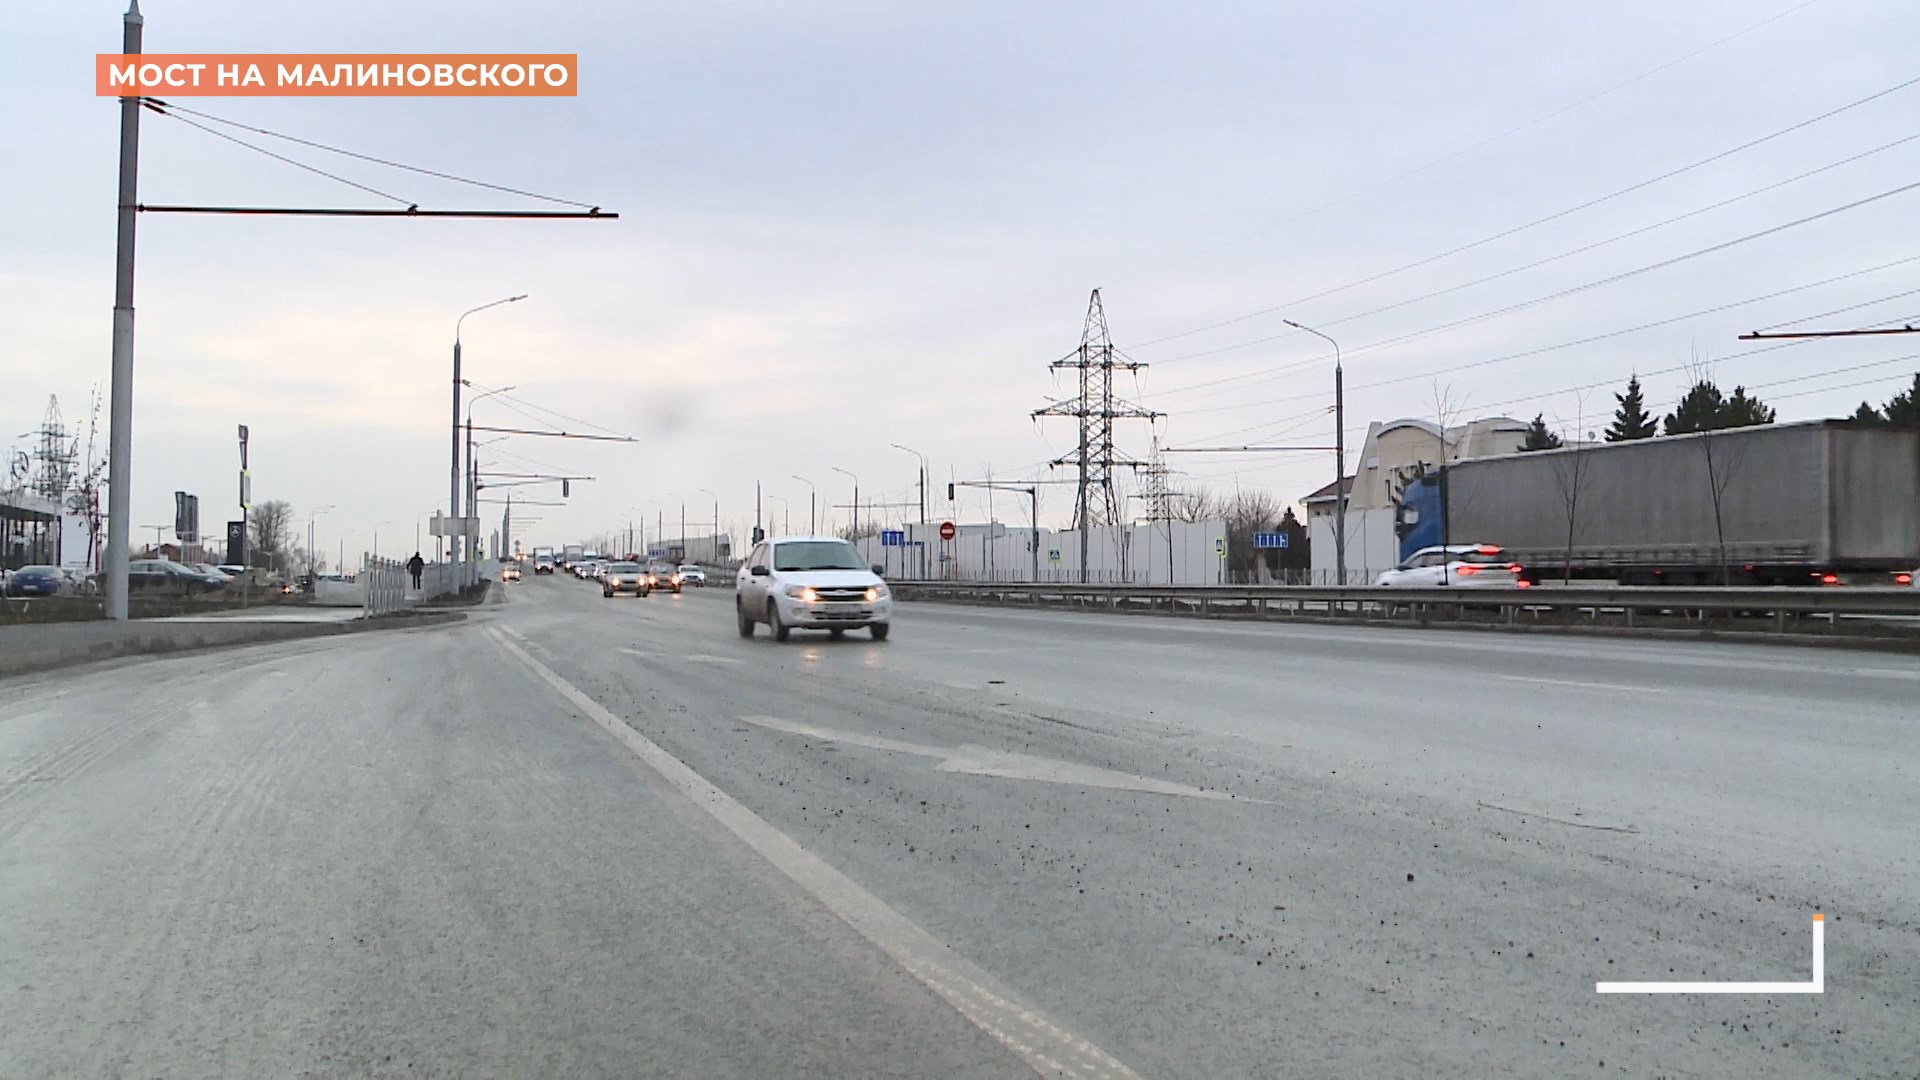 Мост на Малиновского готов на 96%.Осталось установить дорожные знаки и сеть троллейбусной линии